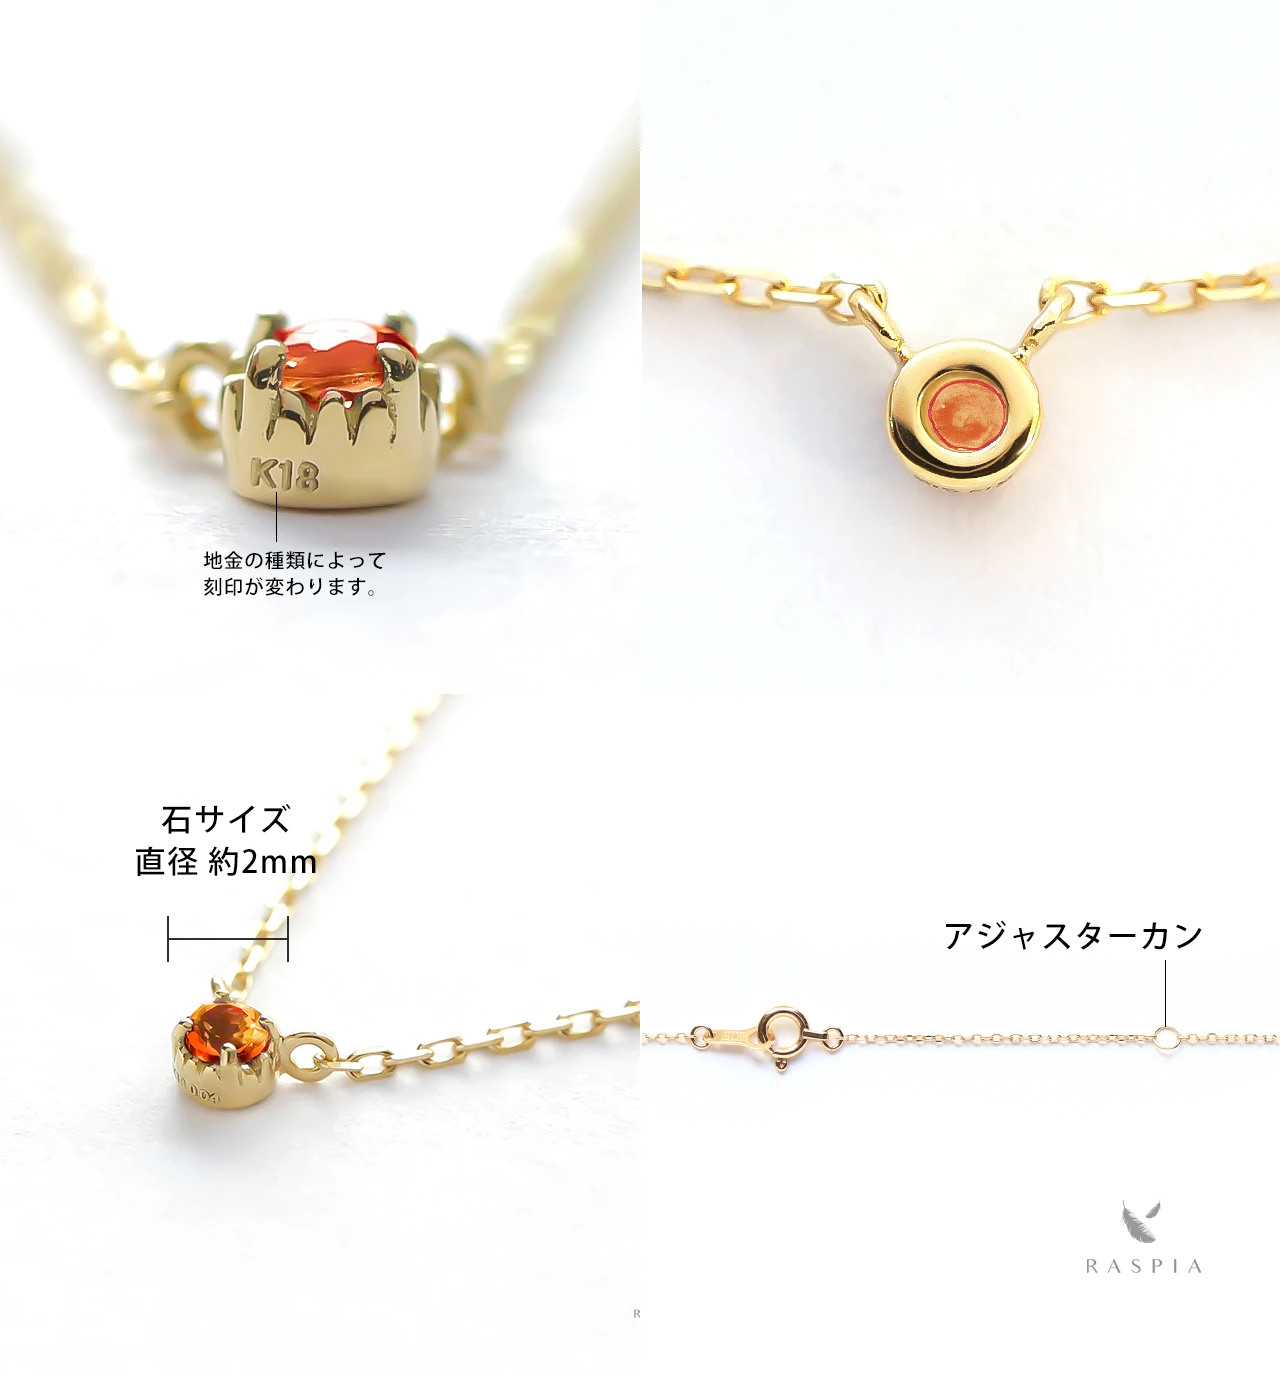 1月誕生石 K10 マンダリンガーネットの一粒ネックレス ~Petela~ (K18 変更可能) ジュエリーブランド「RASPIA Jewelry」